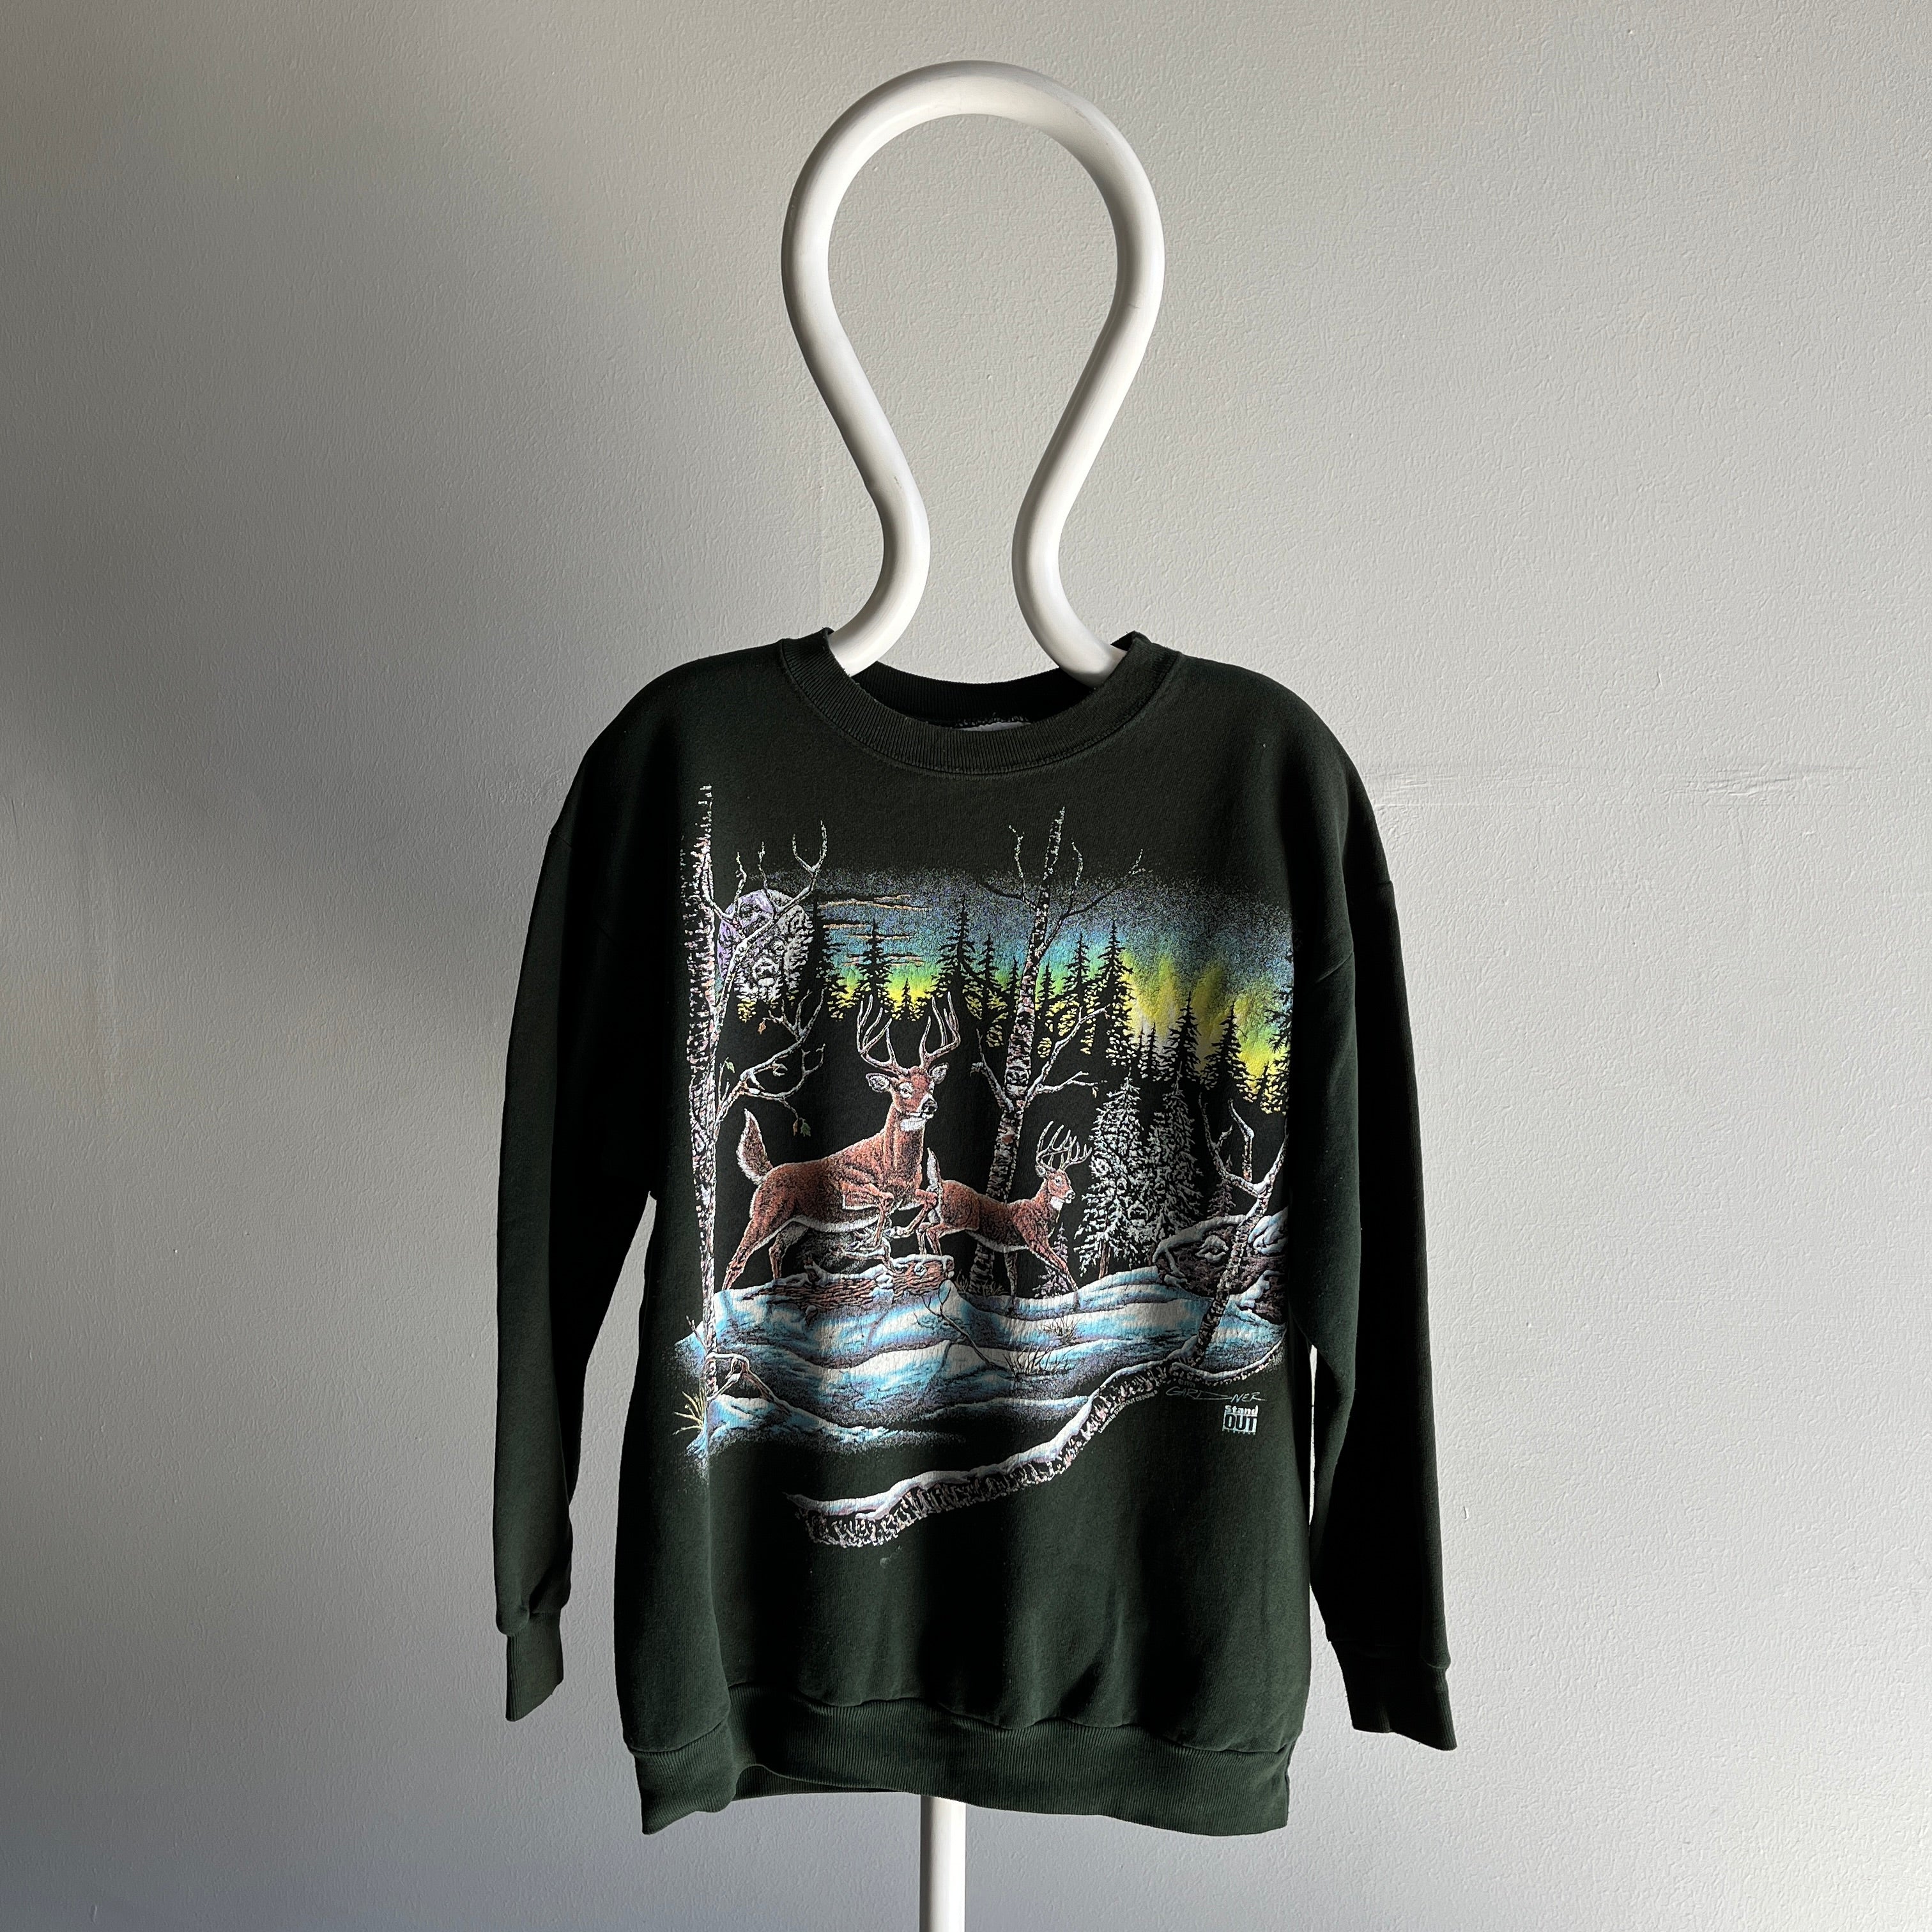 1994 Fabriqué au Canada - Cerf en hiver - Sweat-shirt